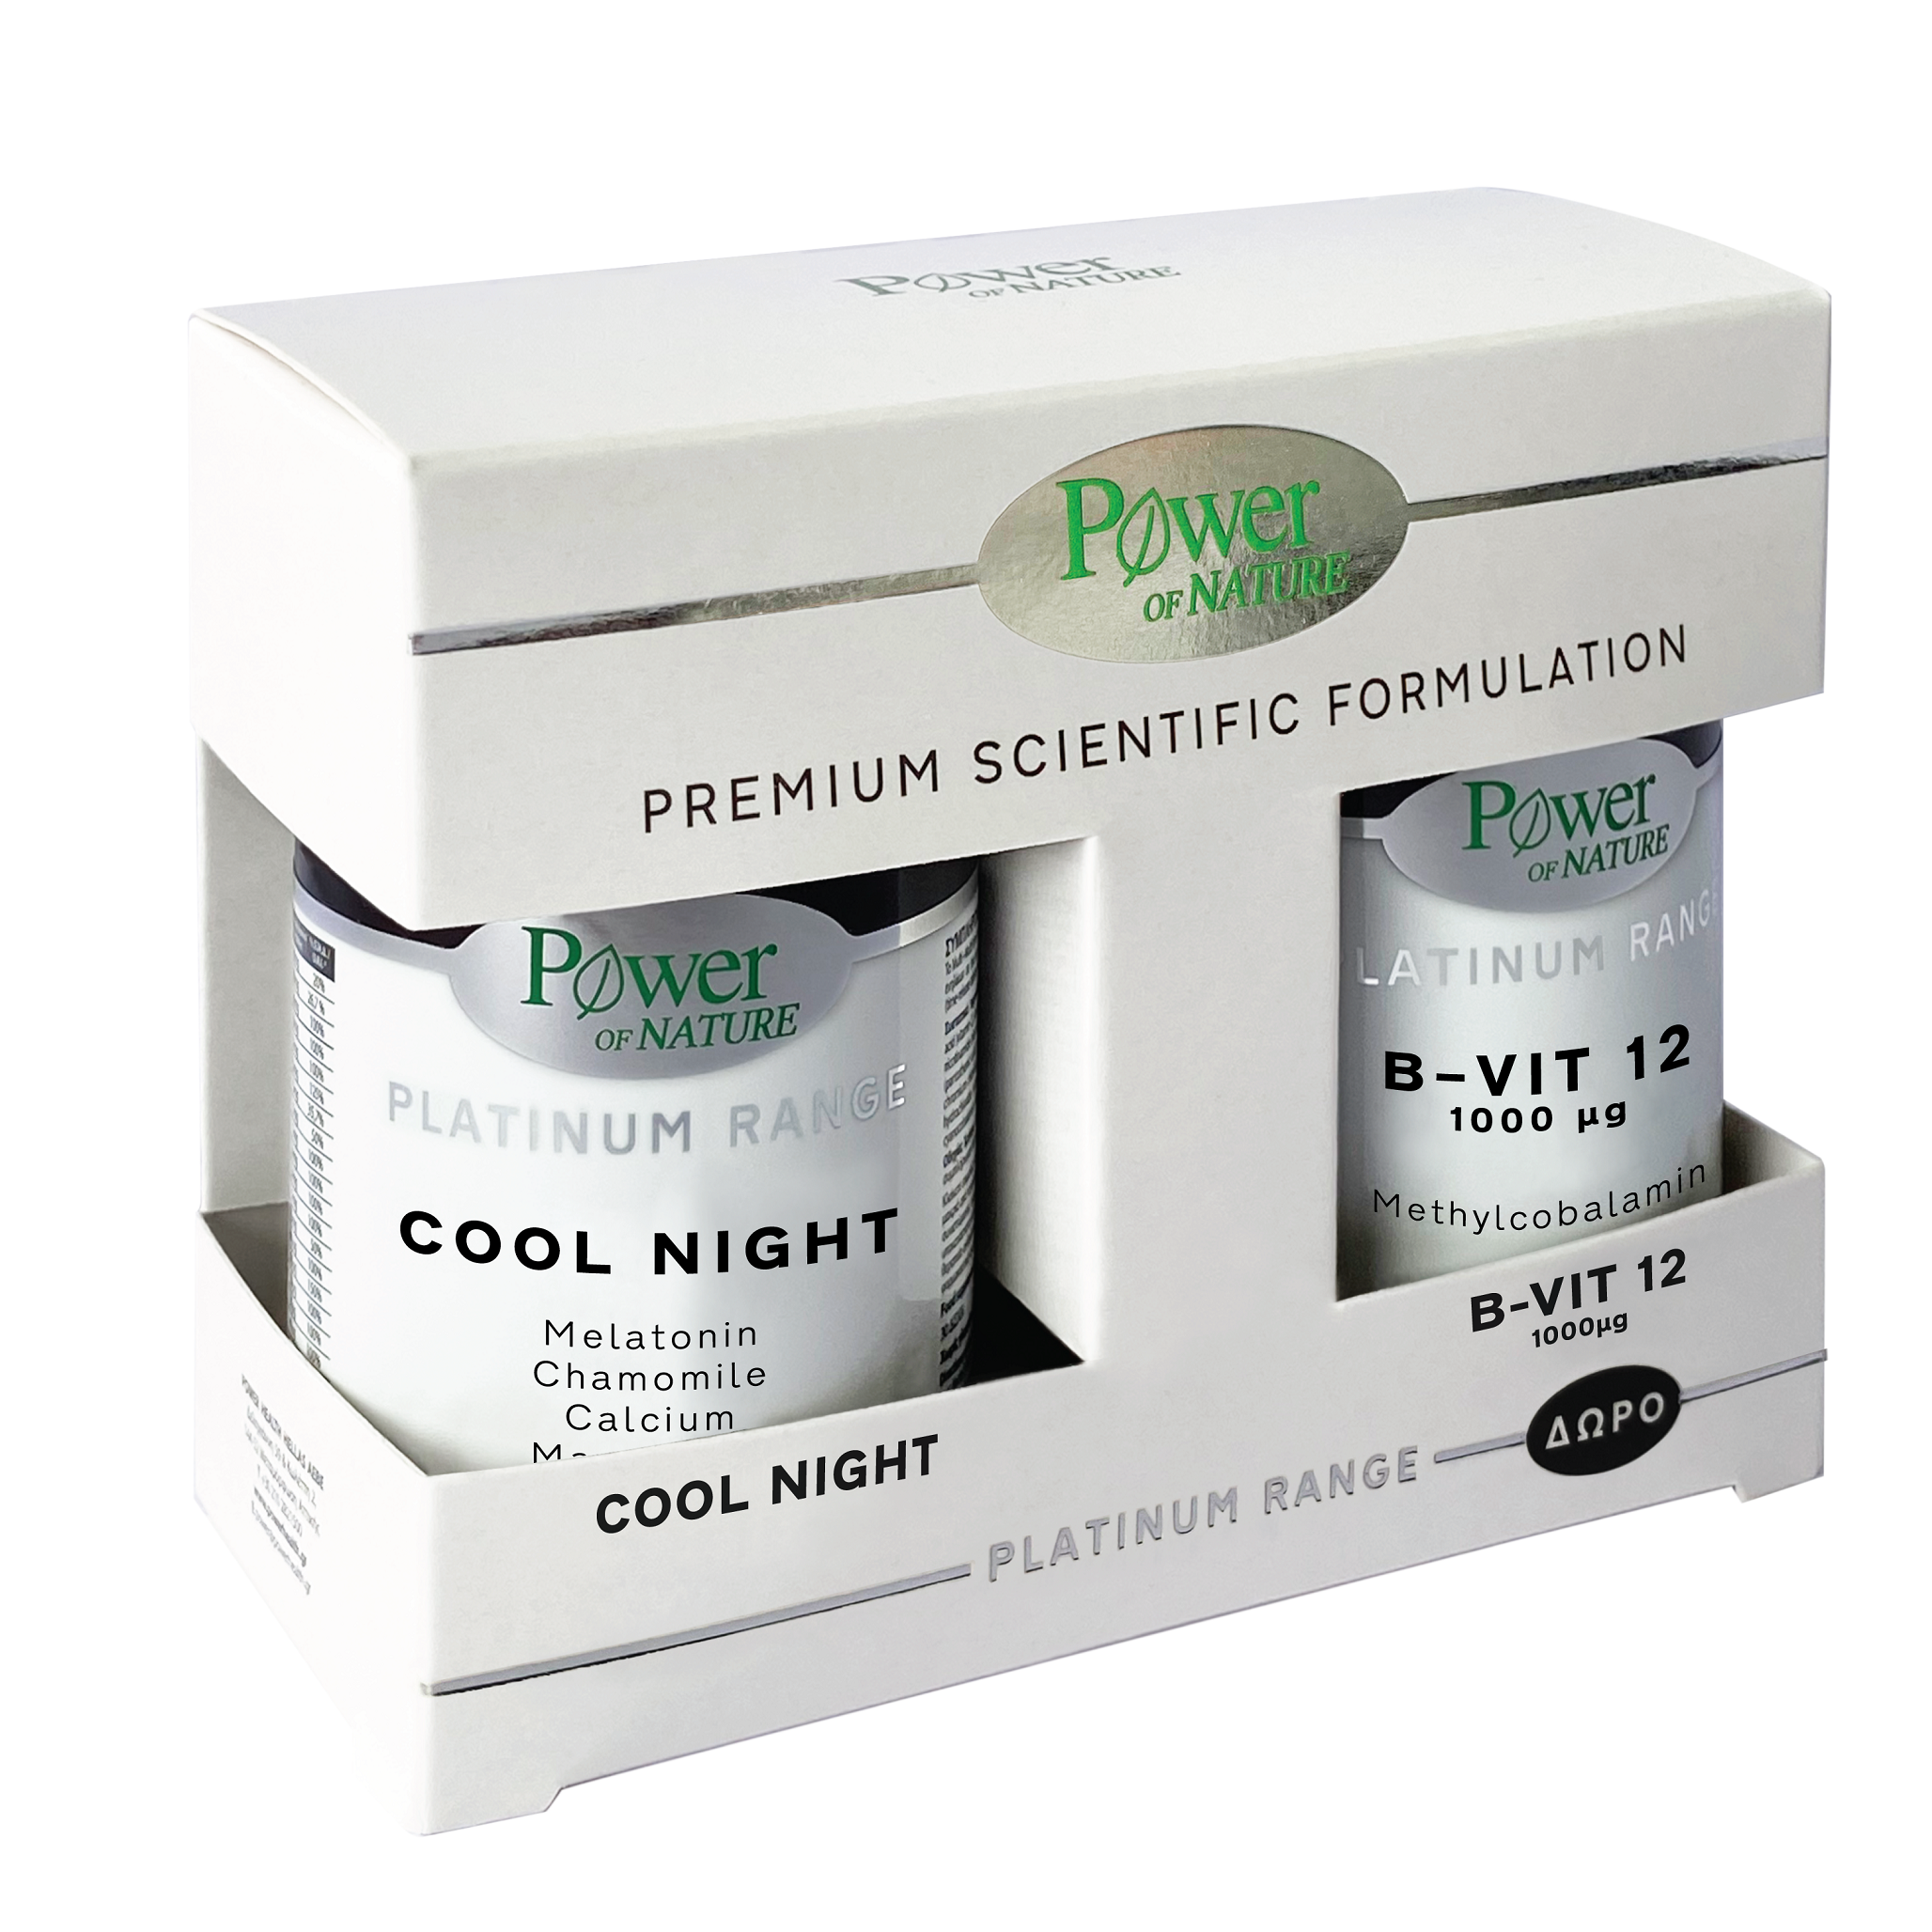 Pachet Cool Night 30 capsule + Vitamina B12 μg 20 tablete, Power of Nature